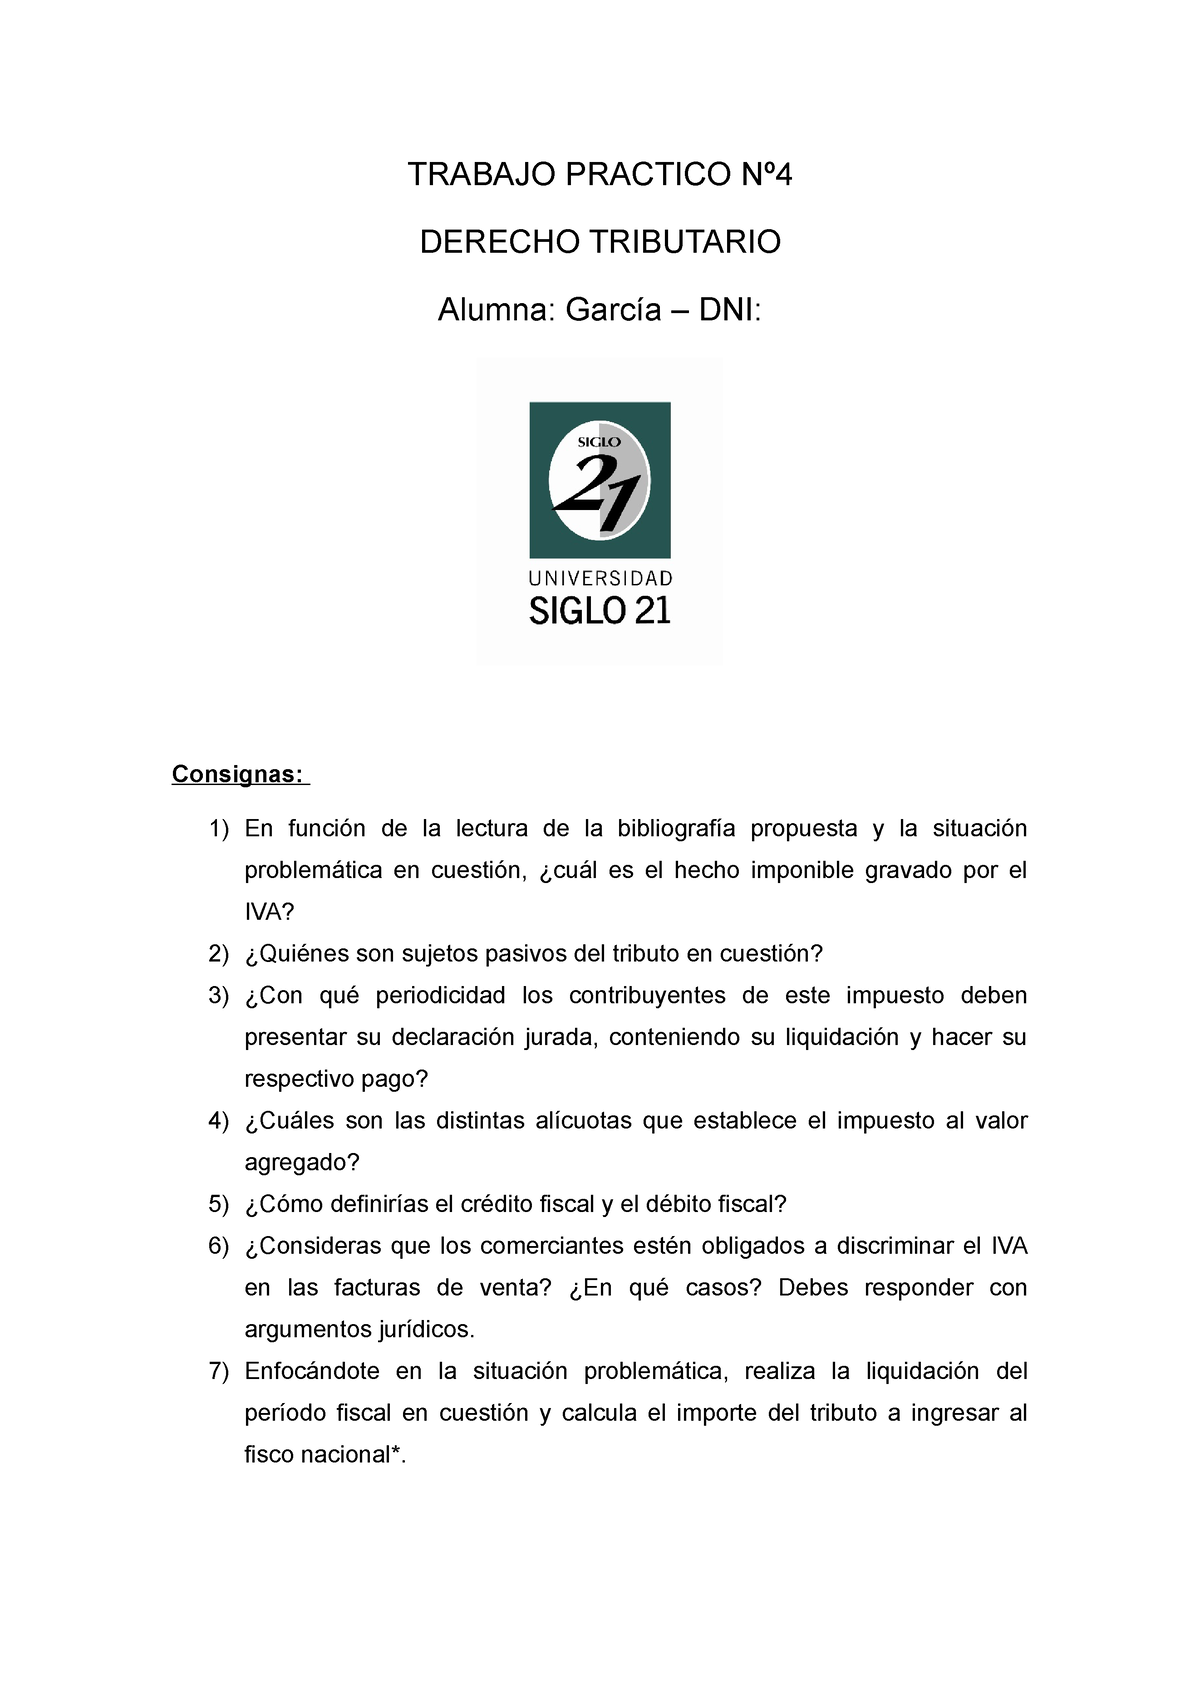 Tp4 Derecho Tributario Trabajo Practico Nº Derecho Tributario Alumna García Dni Consignas 8357